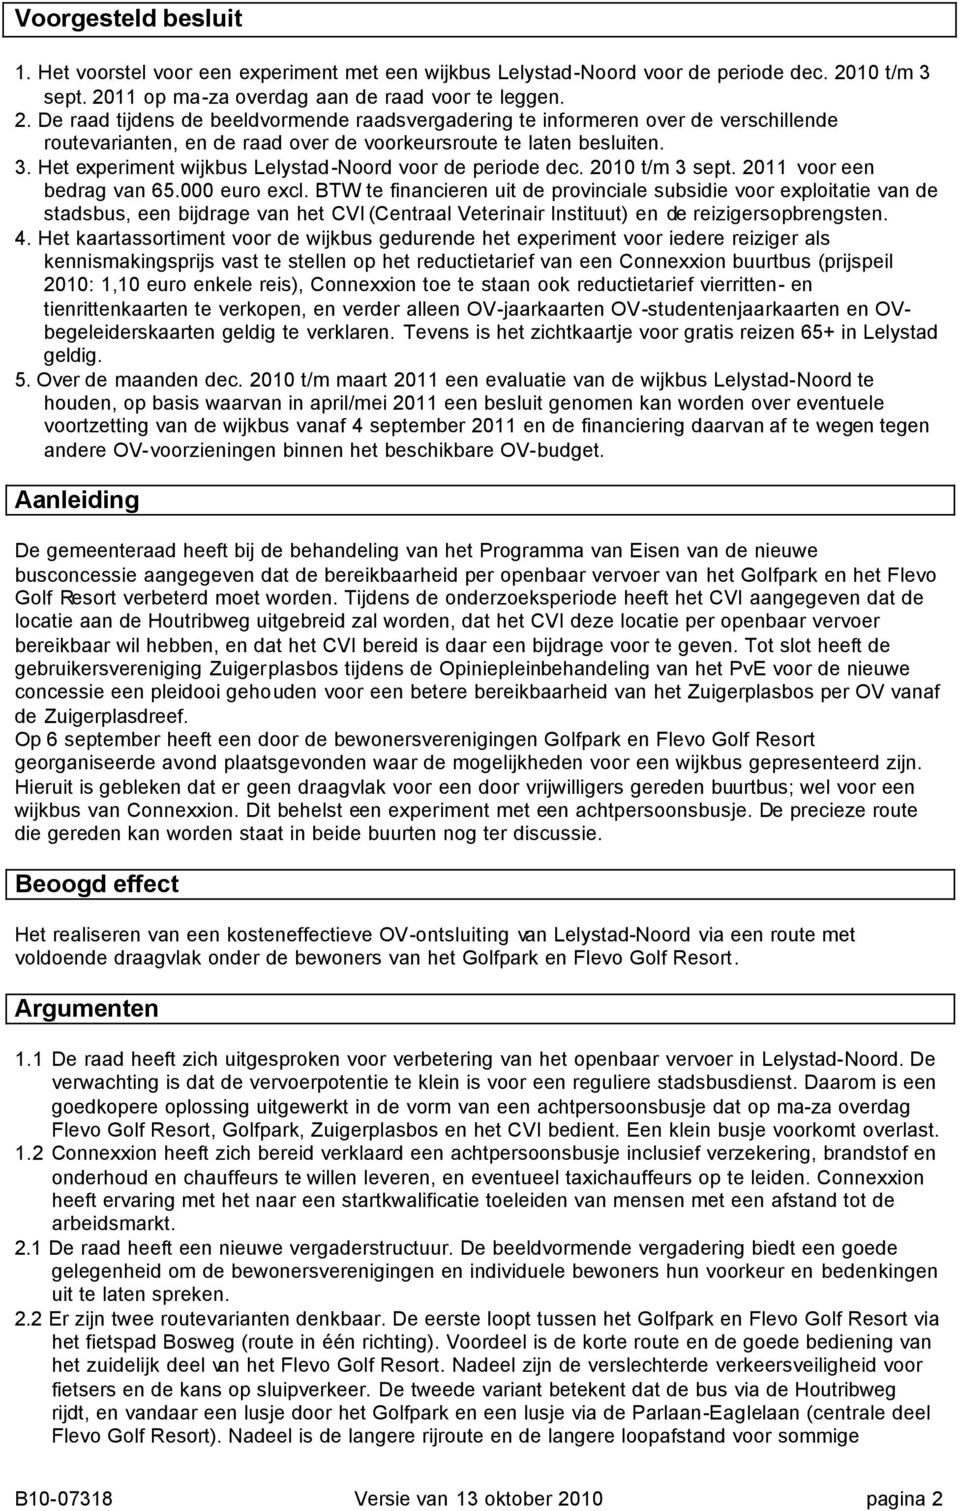 3. Het experiment wijkbus Lelystad-Noord voor de periode dec. 2010 t/m 3 sept. 2011 voor een bedrag van 65.000 euro excl.